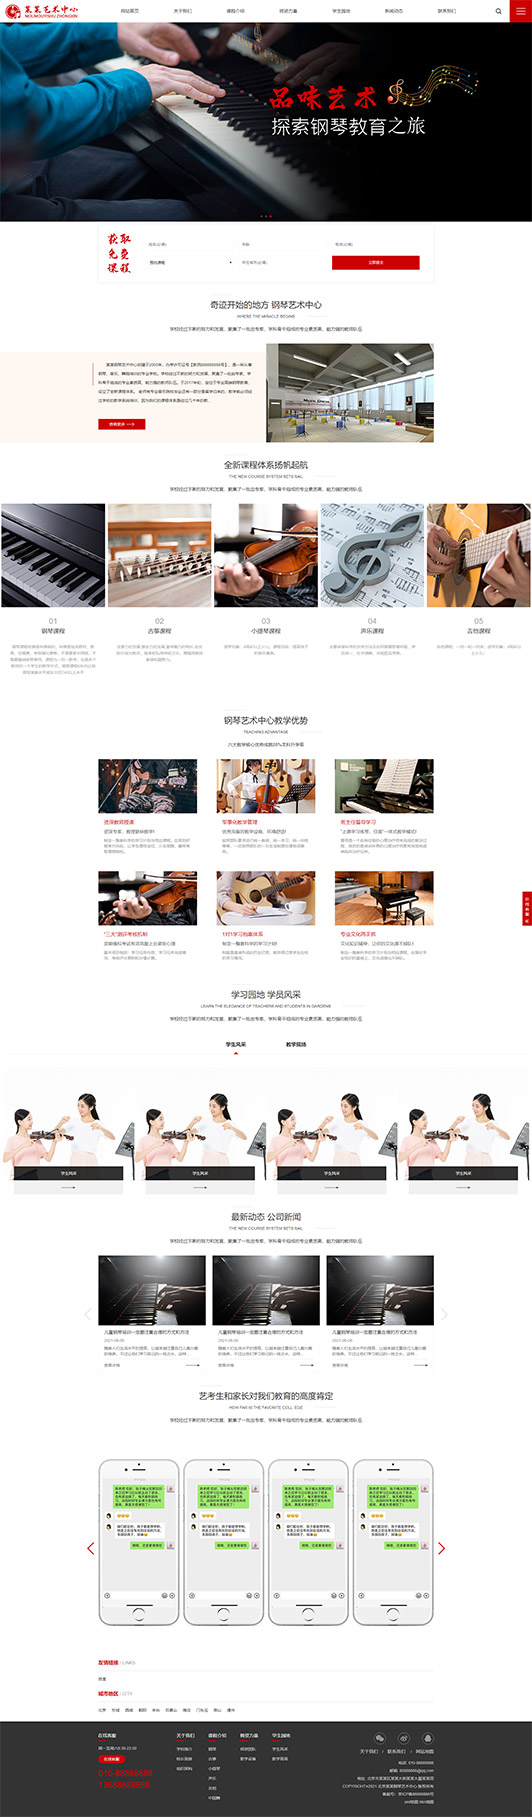 菏泽钢琴艺术培训公司响应式企业网站